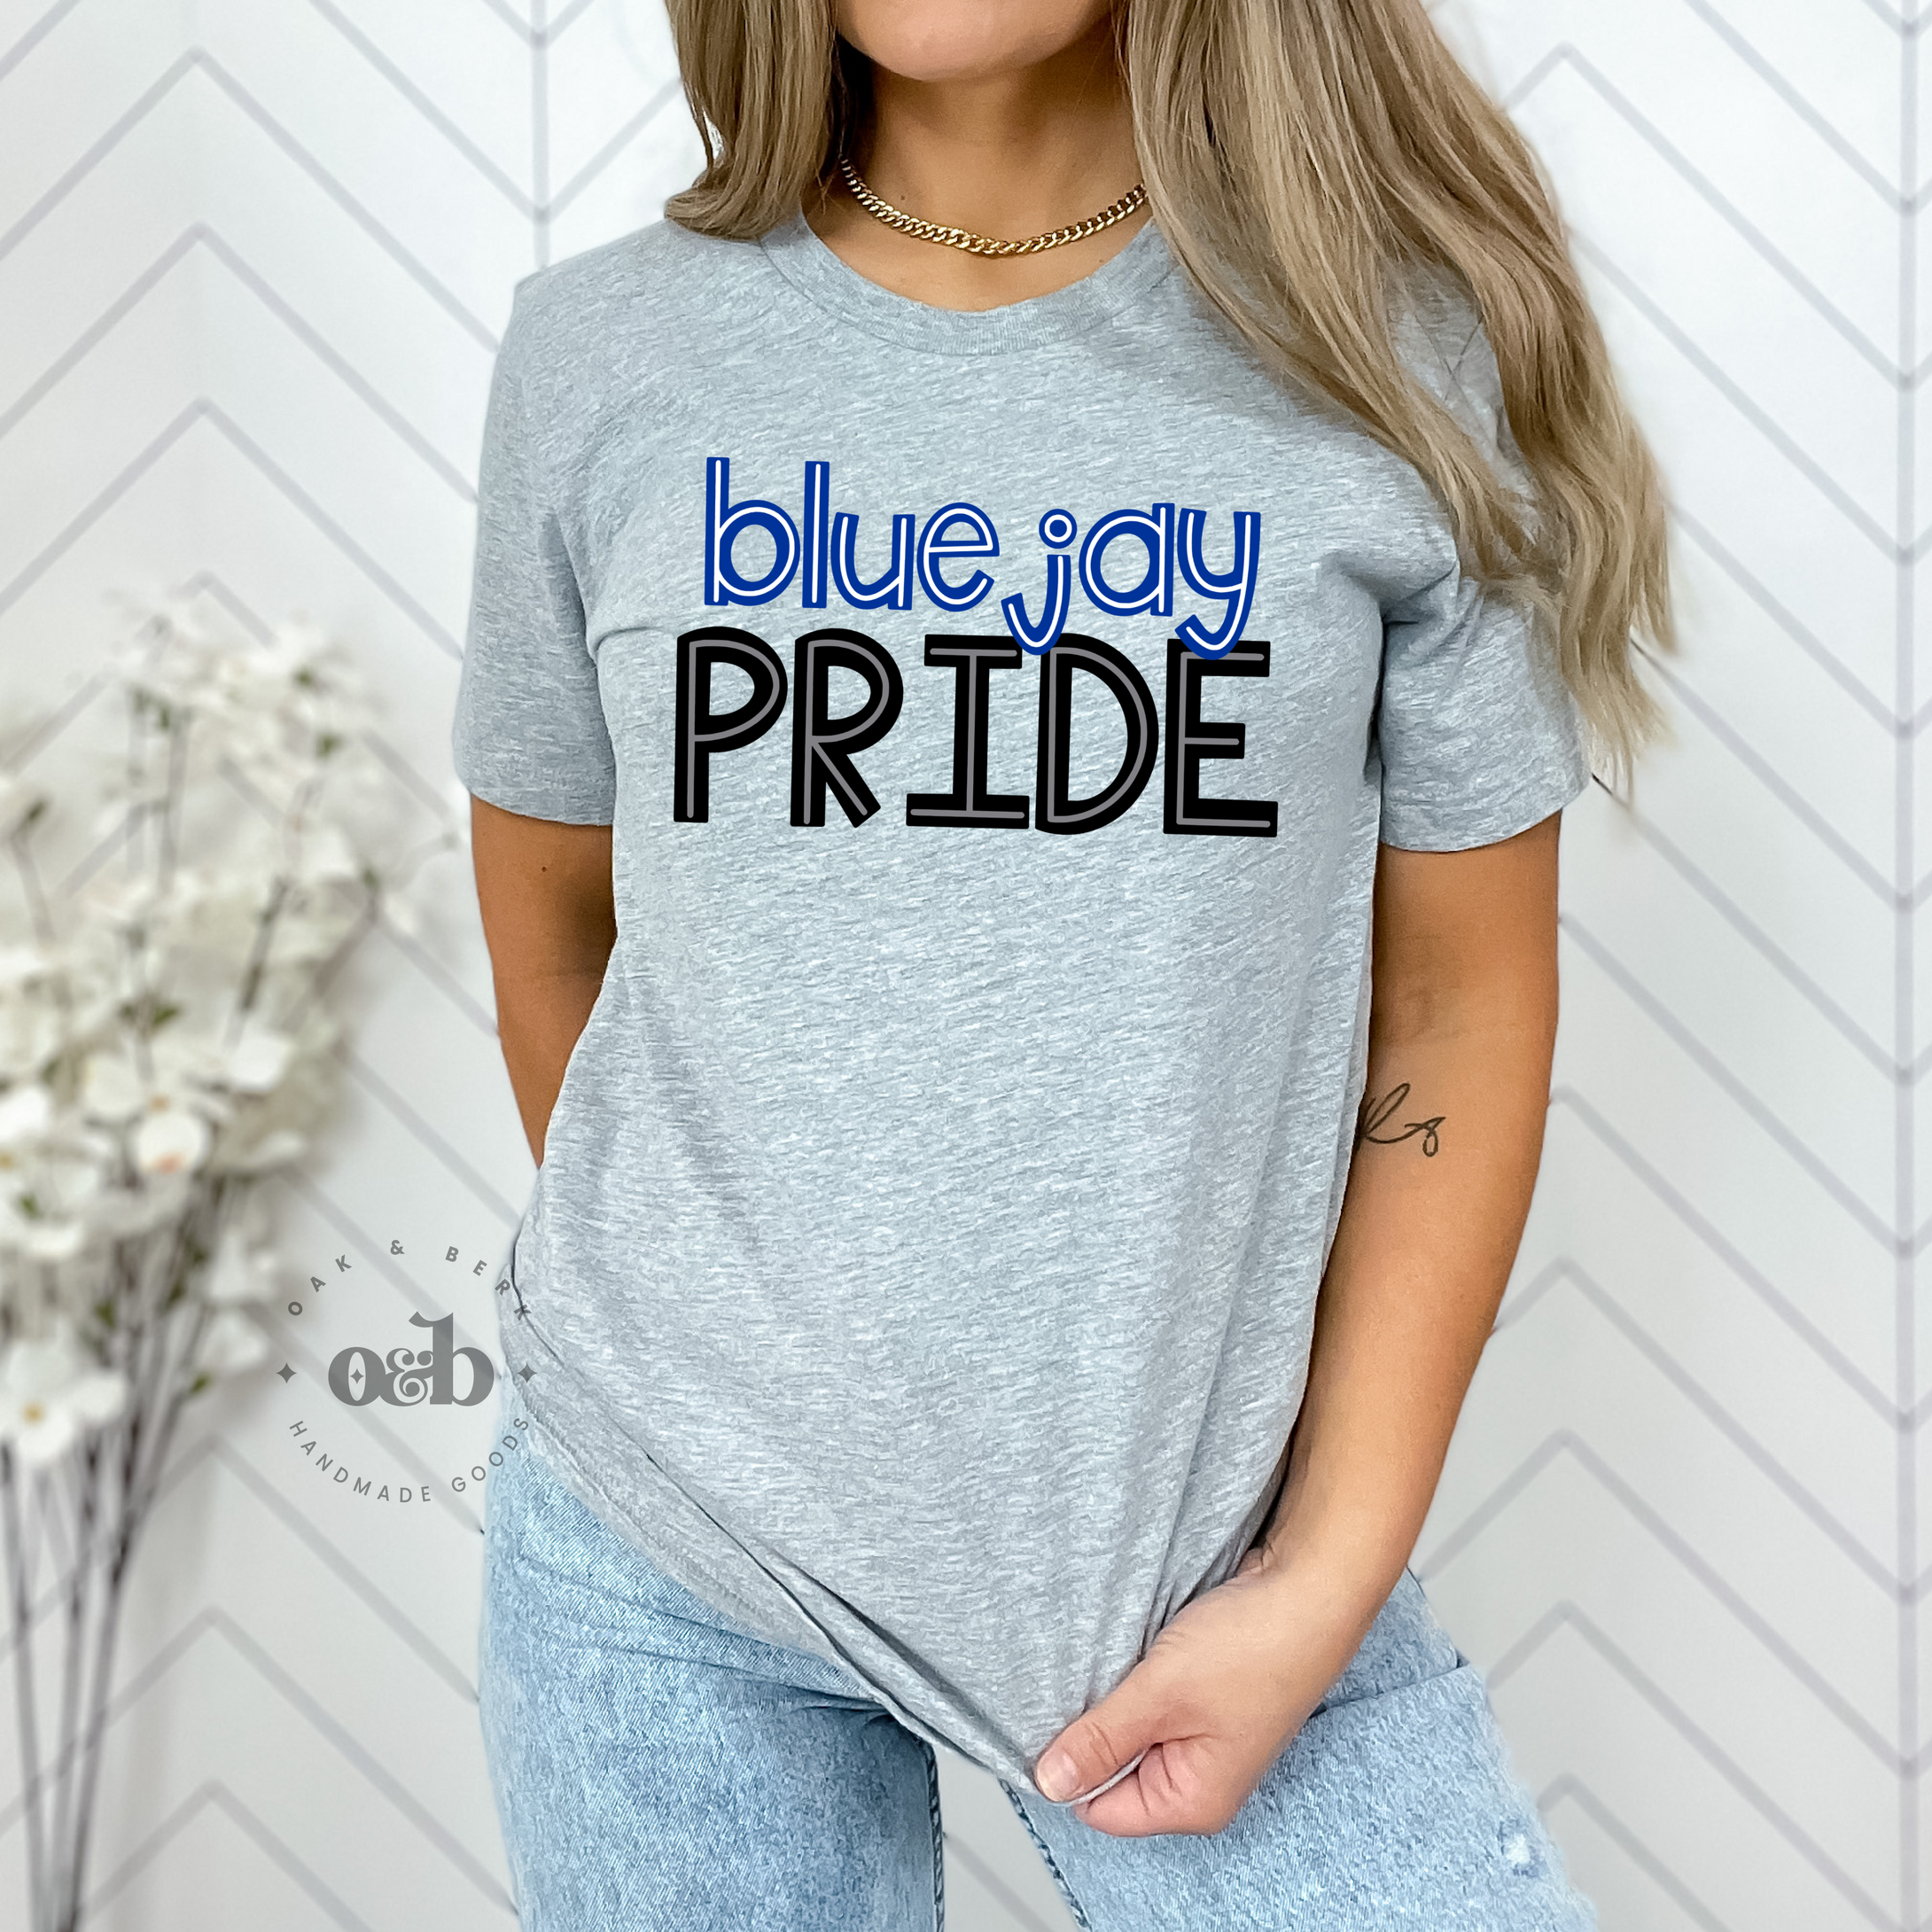 MTO / Bluejay Pride, adult